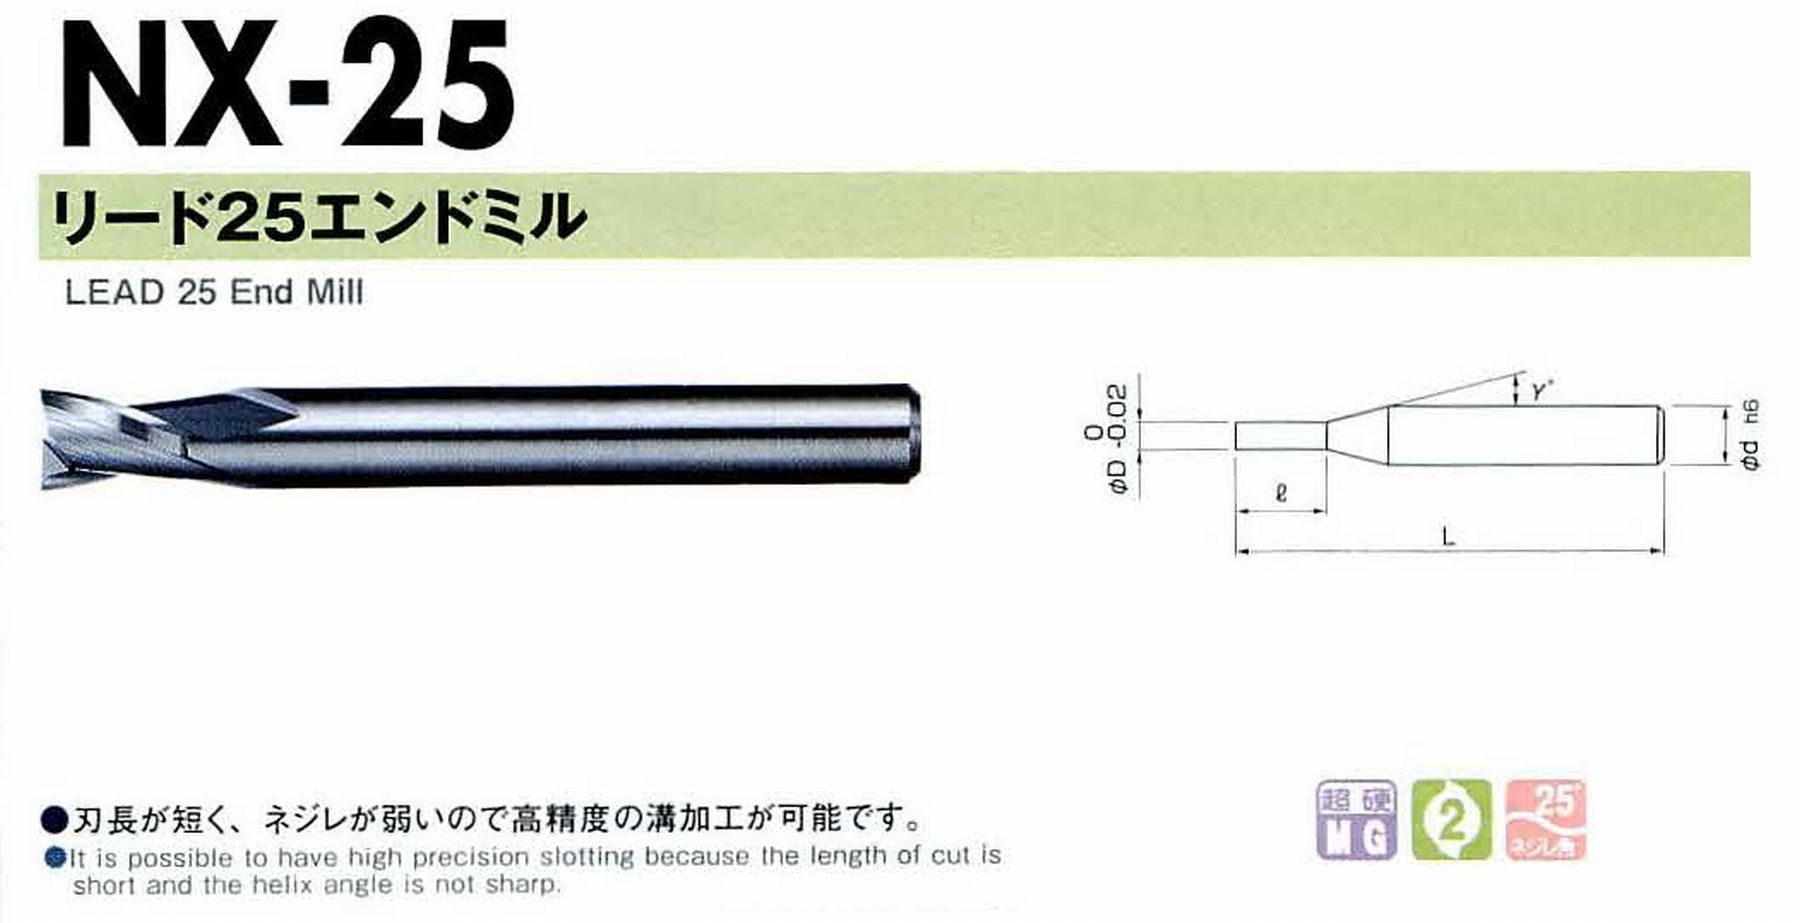 NS 日進工具 NX-25 リード25エンドミル コードNO．01-00025-00800 刃径8 刃長8 首角- シャンク径8mm 全長55